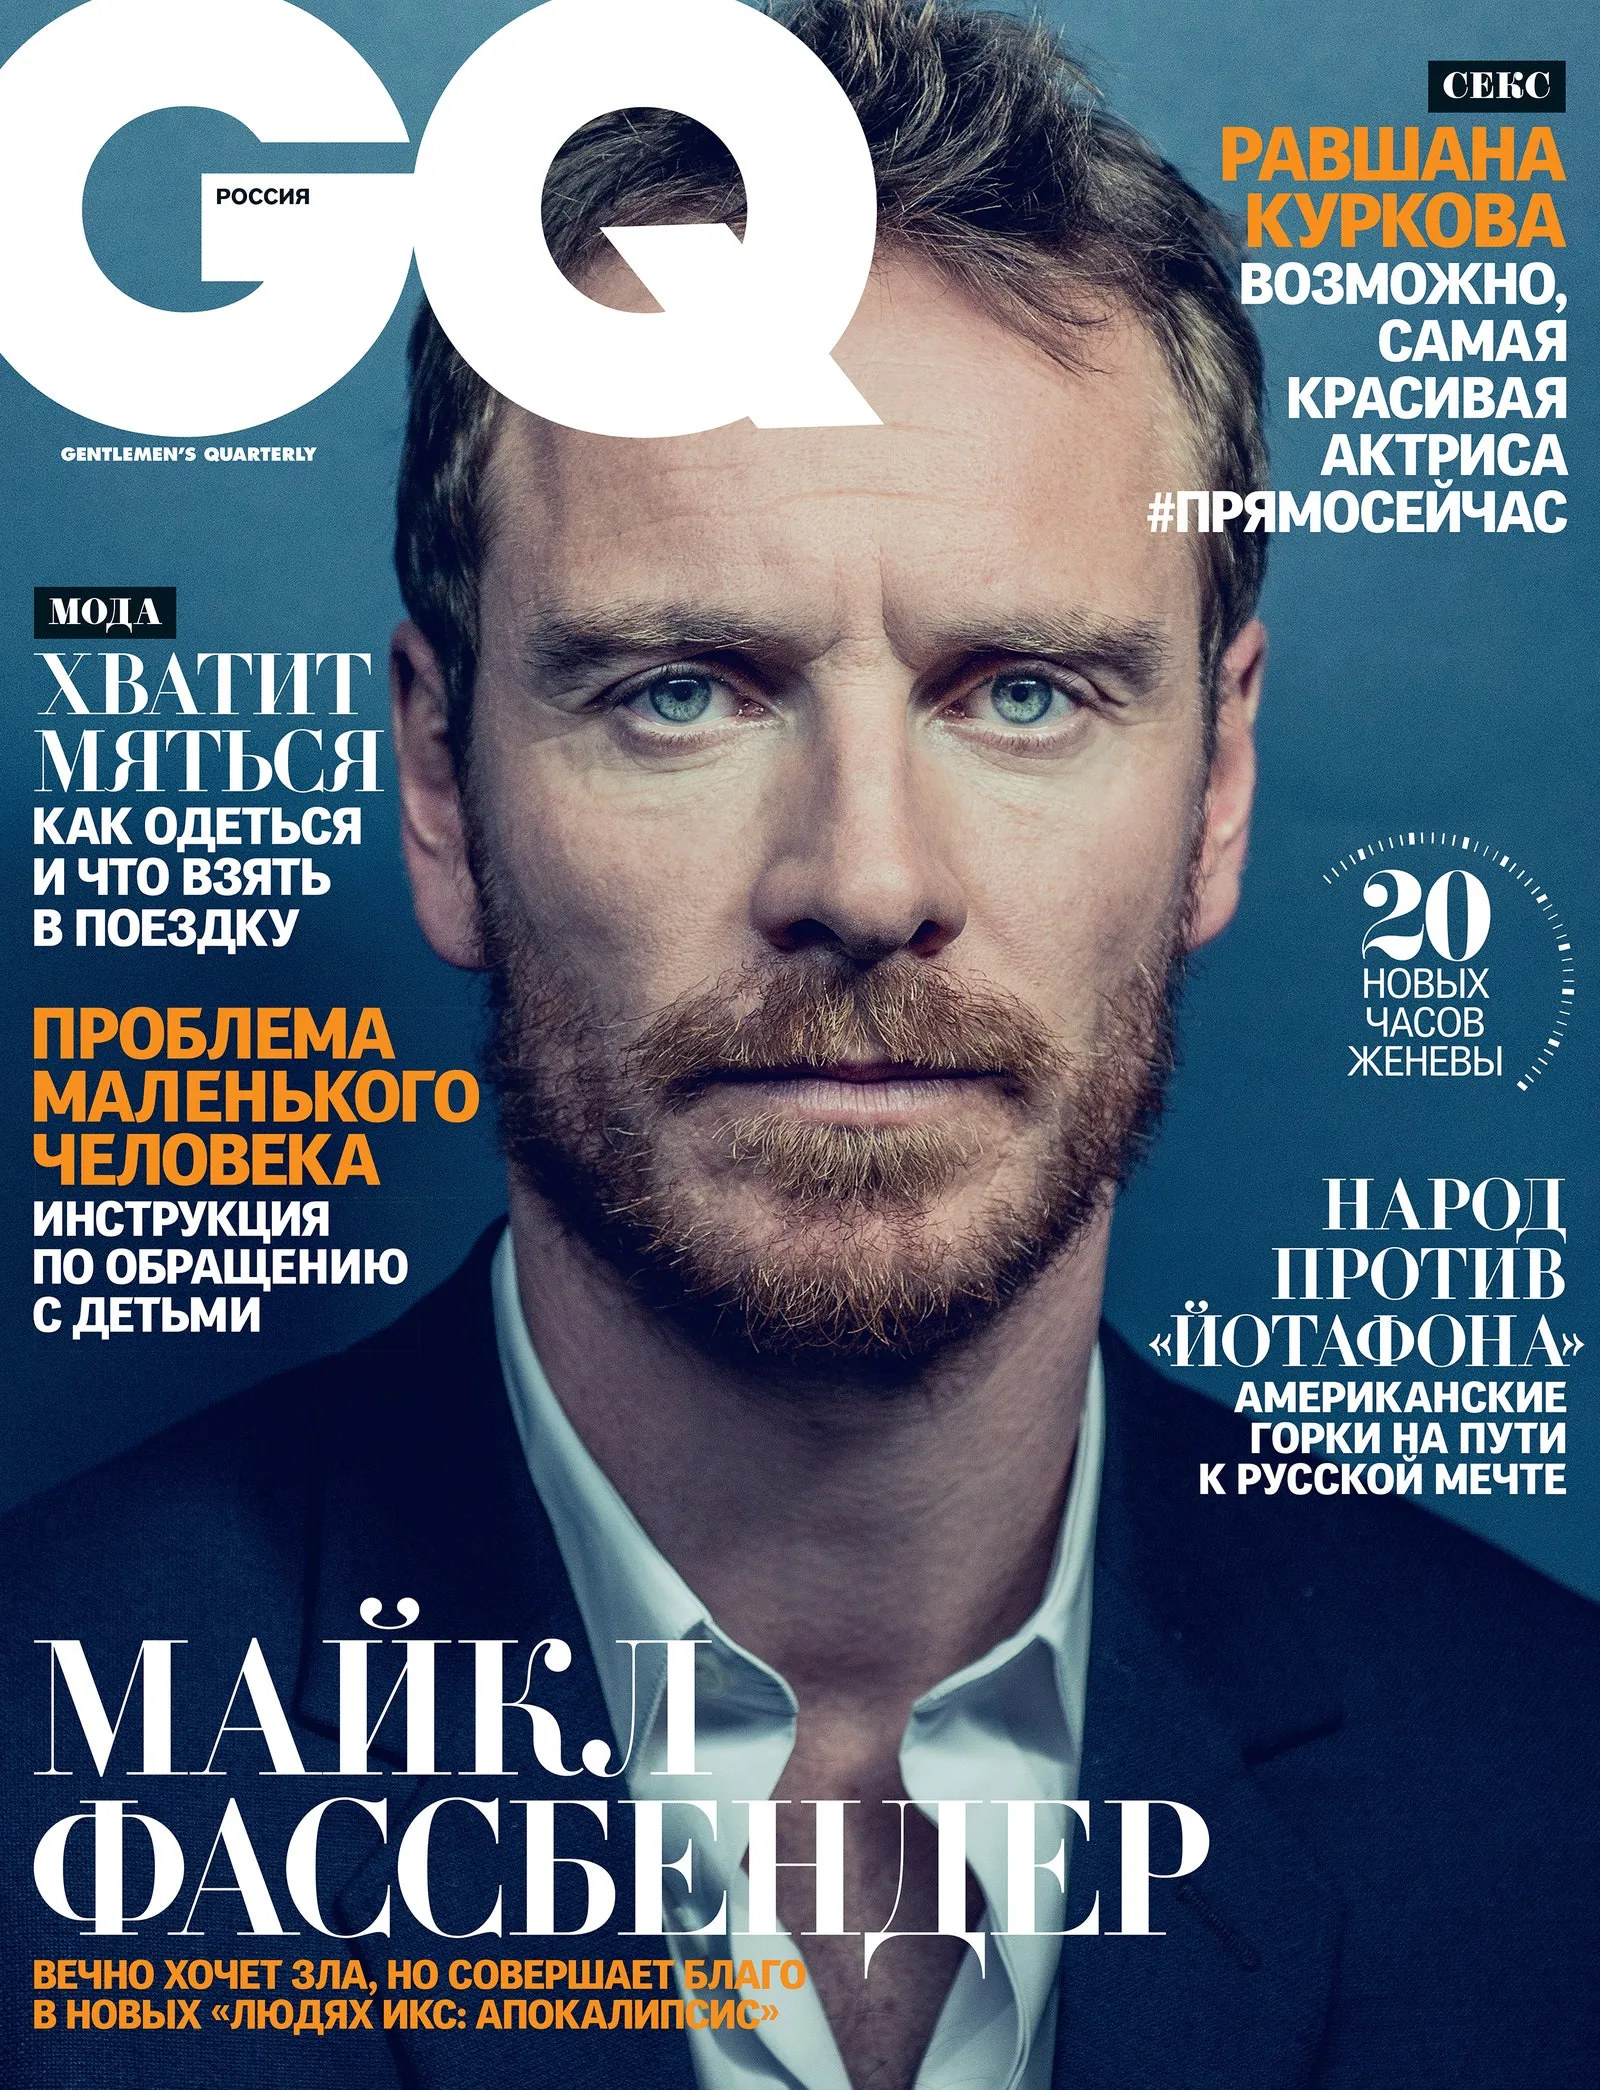 Какие популярные журналы. Журнал gq. Обложка для журнала. Обложка мужского журнала. Gq обложки.